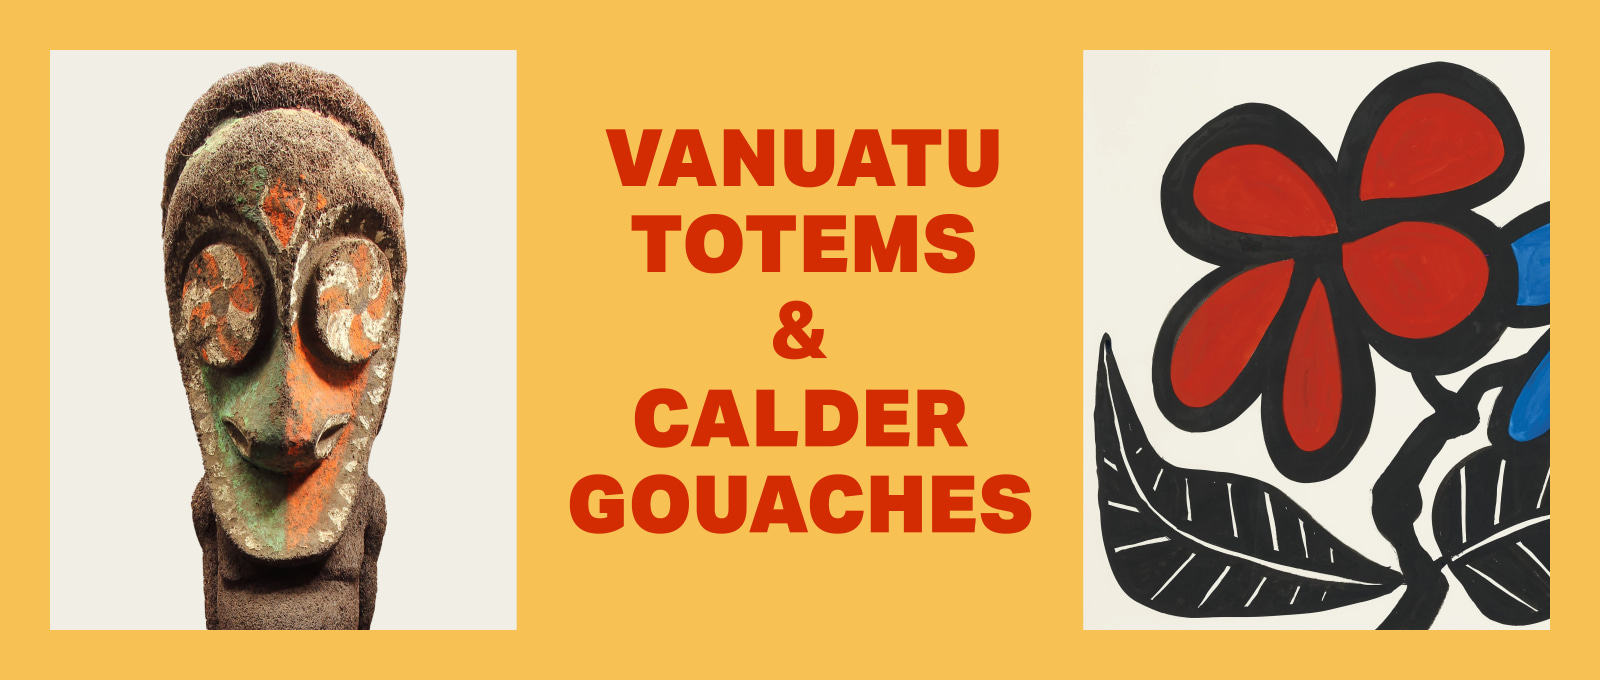 Calder Gouaches & Vanuatu Totems at Independent 20th Century and Venus Over Manhattan